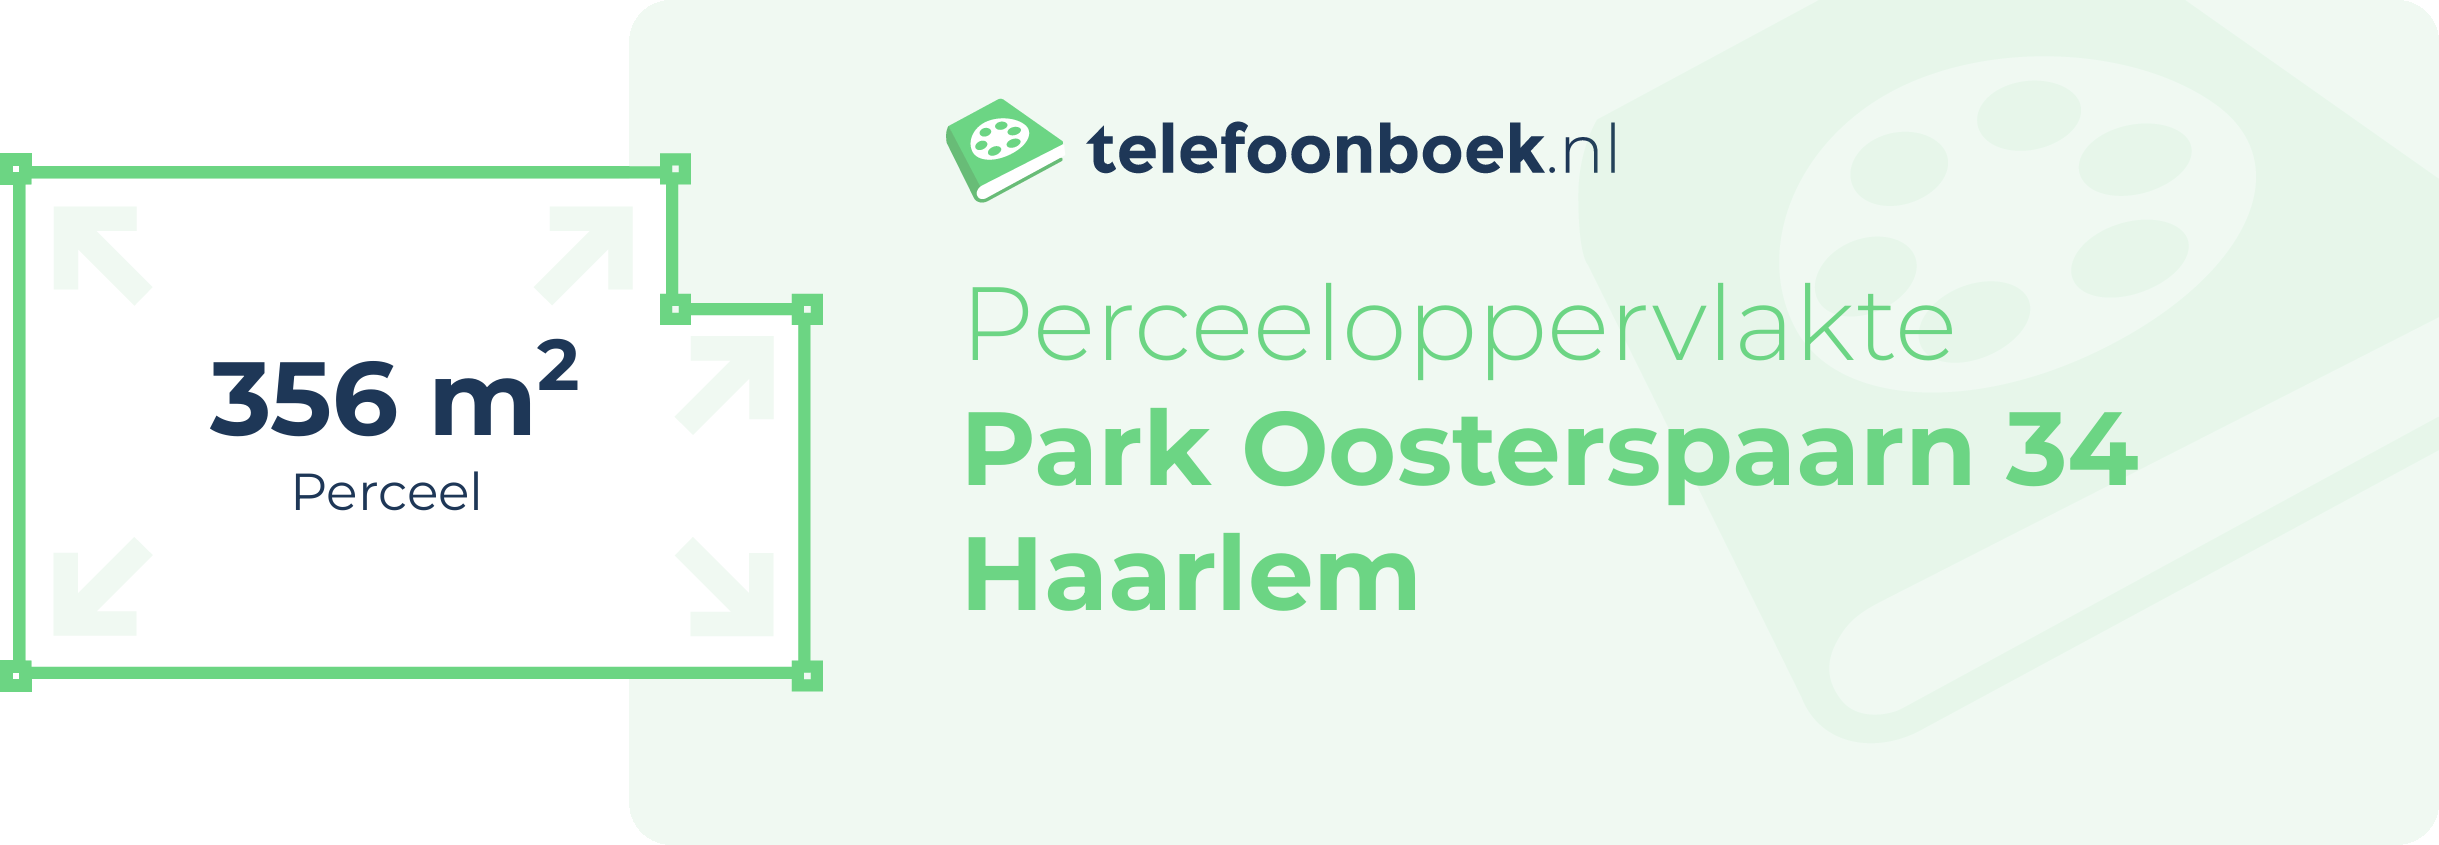 Perceeloppervlakte Park Oosterspaarn 34 Haarlem